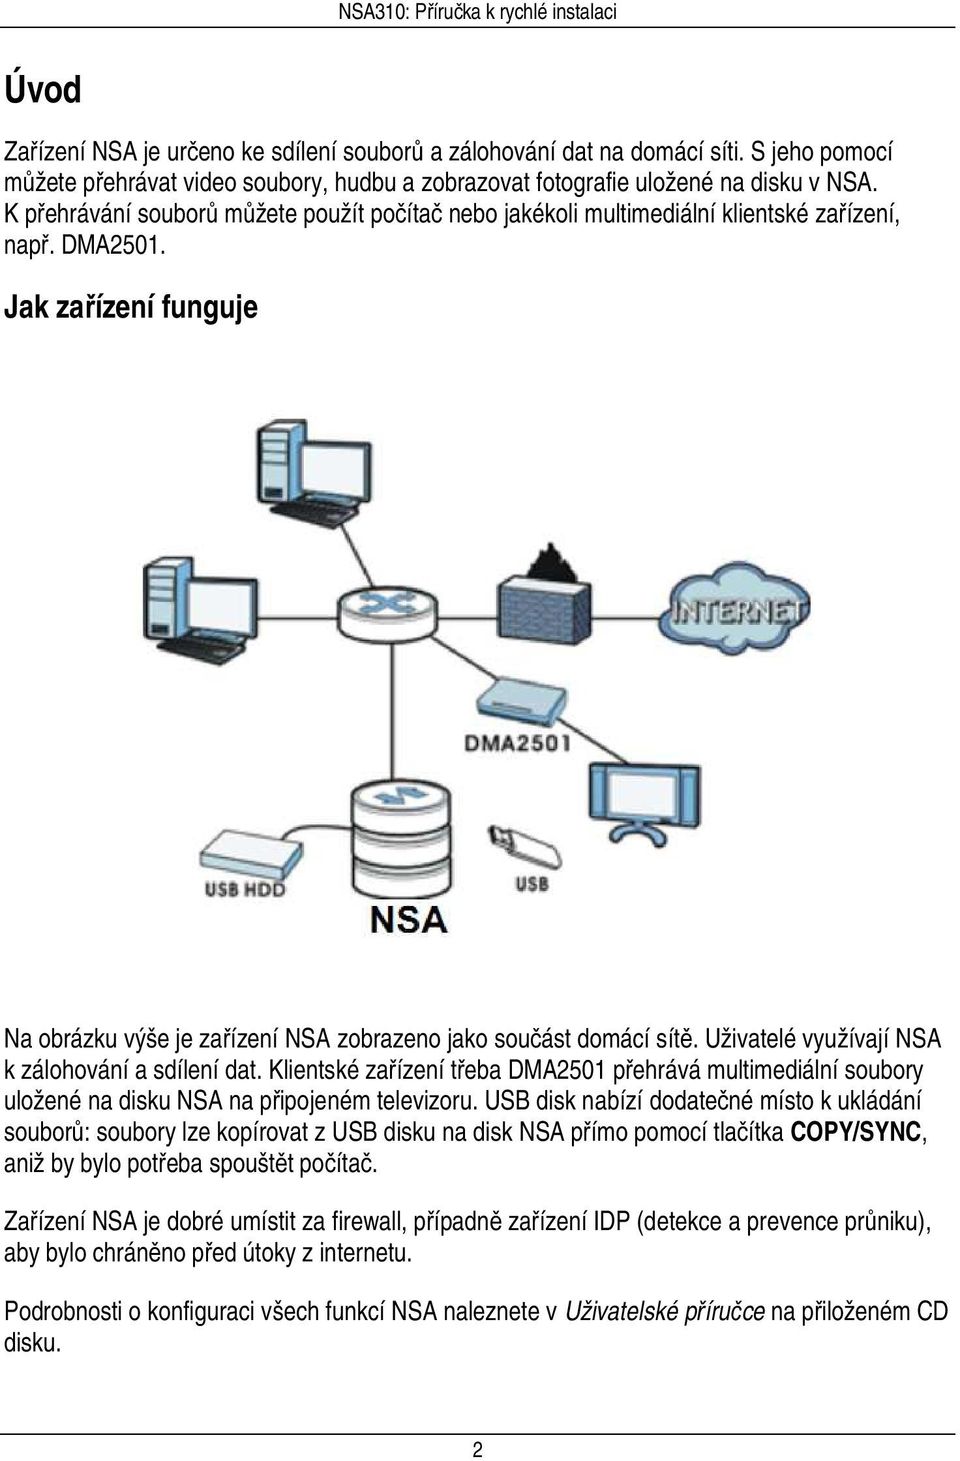 Uživatelé využívají NSA k zálohování a sdílení dat. Klientské zařízení třeba DMA2501 přehrává multimediální soubory uložené na disku NSA na připojeném televizoru.